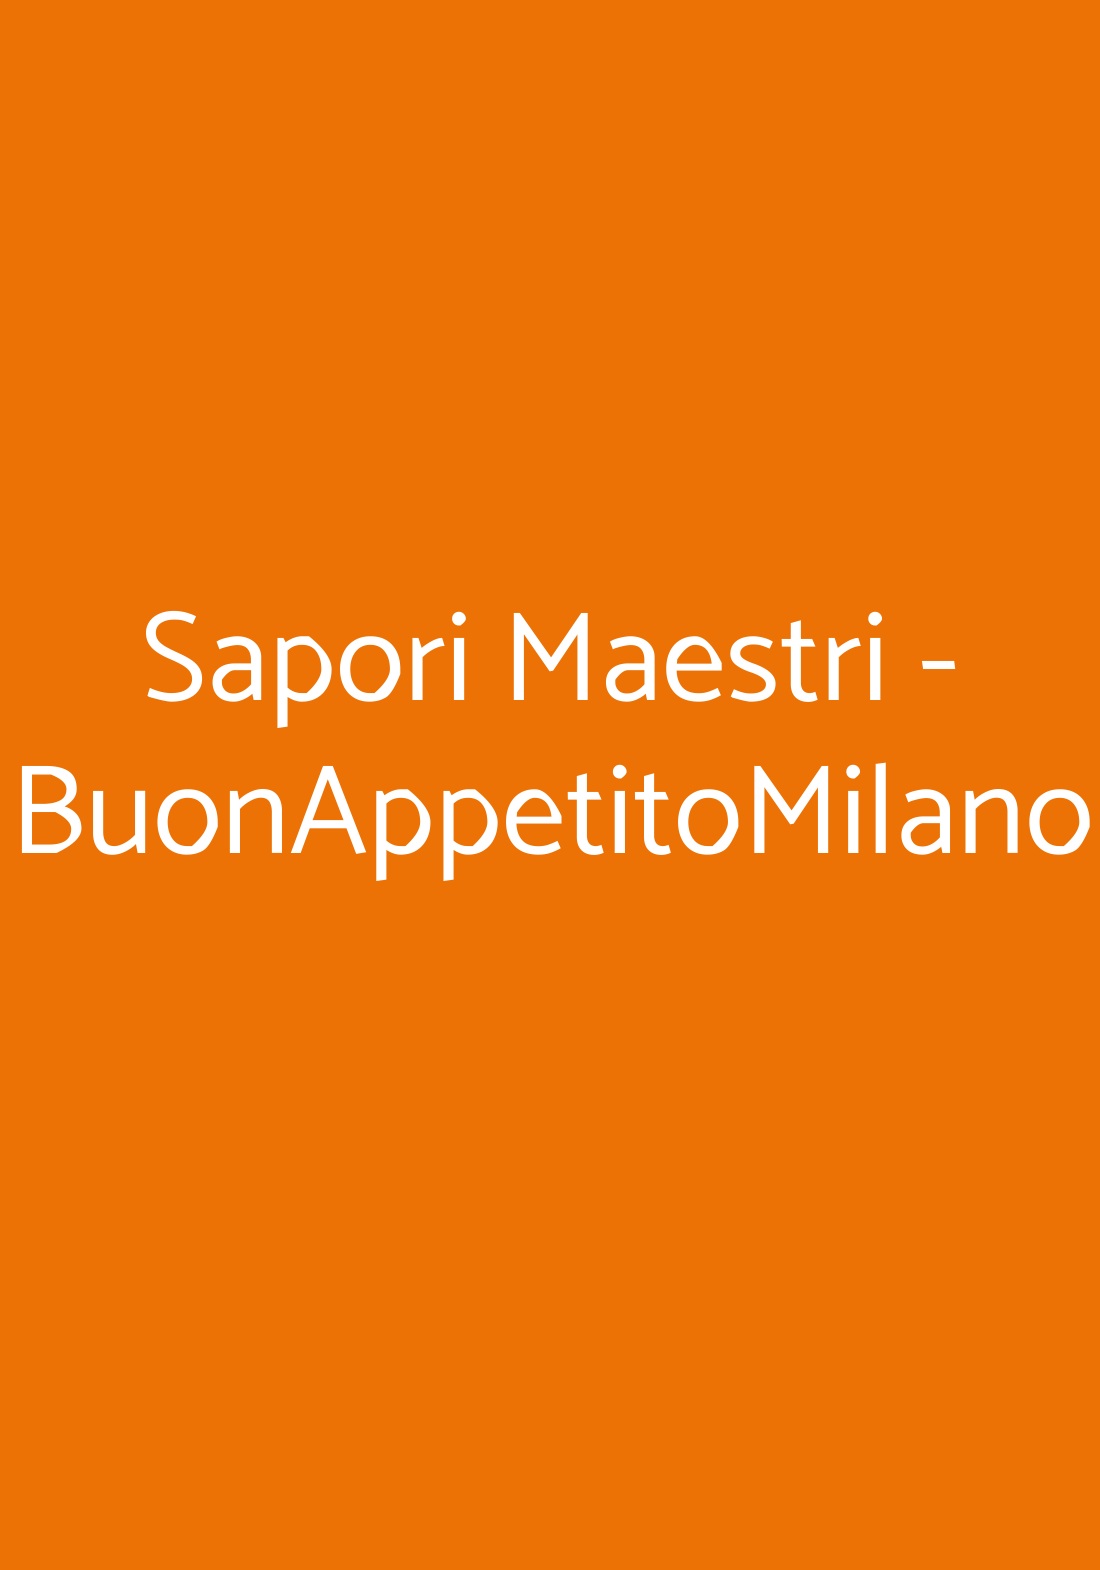 Sapori Maestri - BuonAppetitoMilano Milano menù 1 pagina